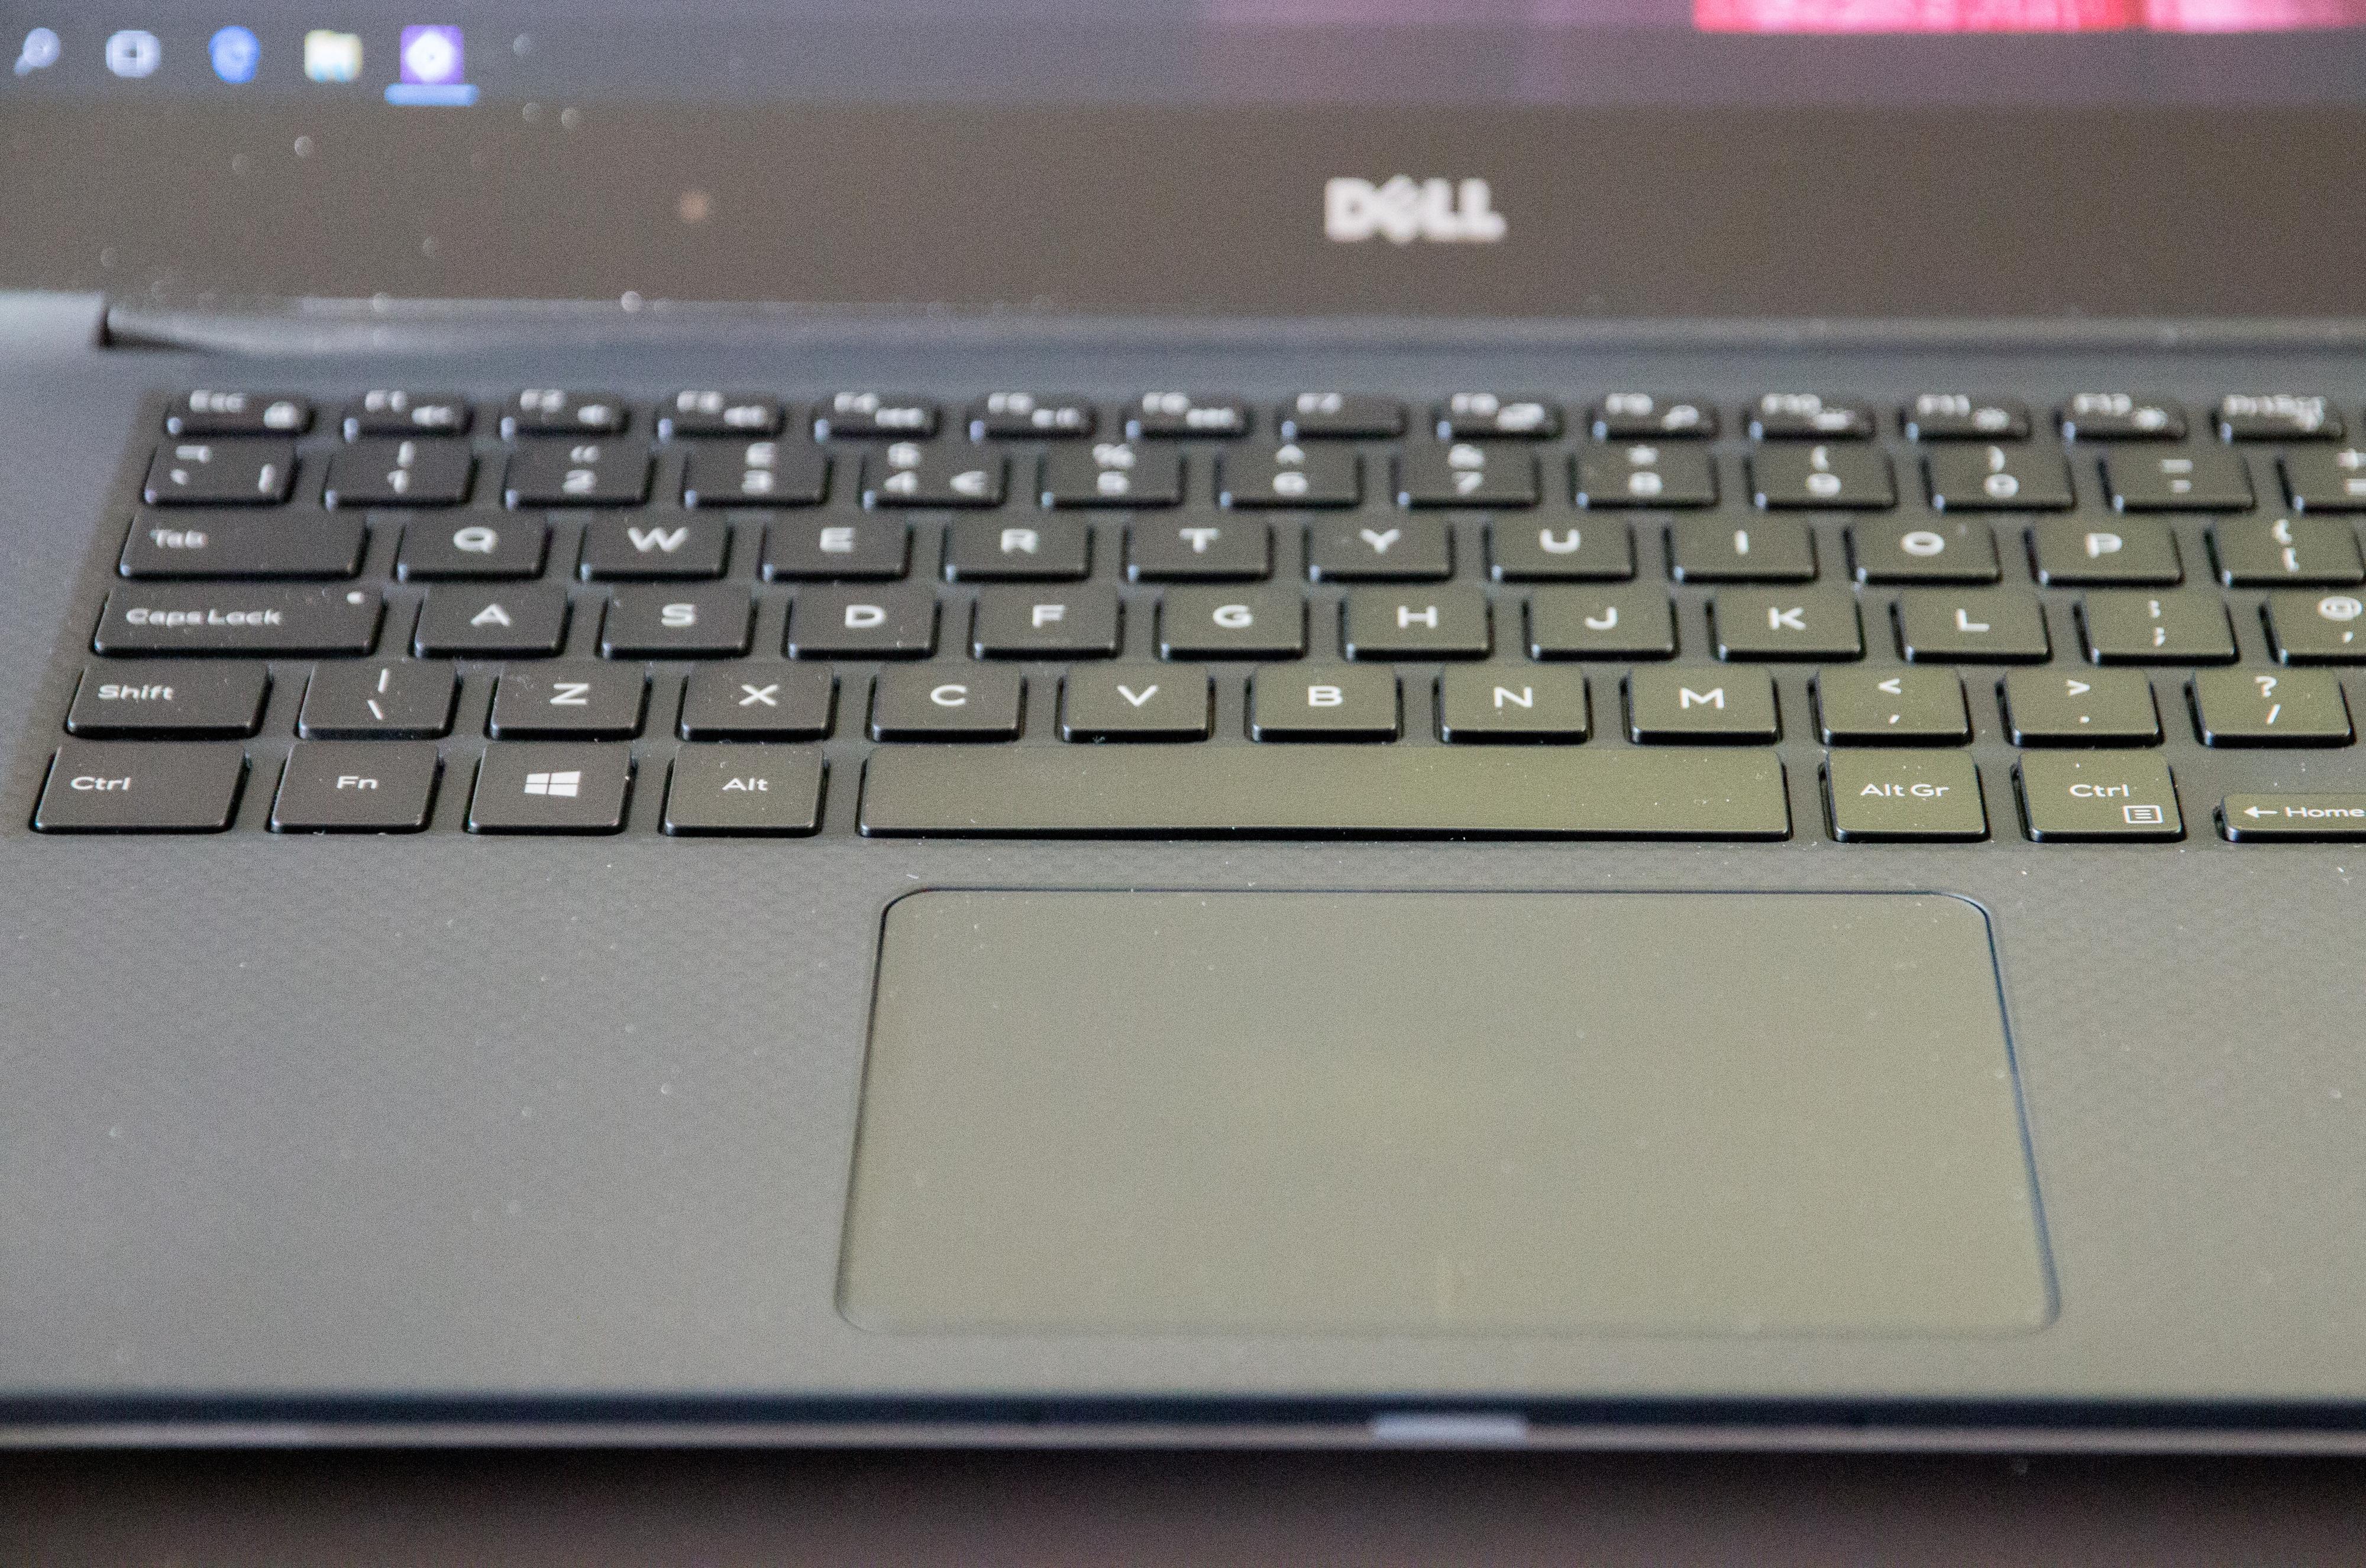 Dells pekeplate er av glass, slik som MacBook Pros, men til tross for god presisjon ligger Apple fortsatt et lite hode foran.